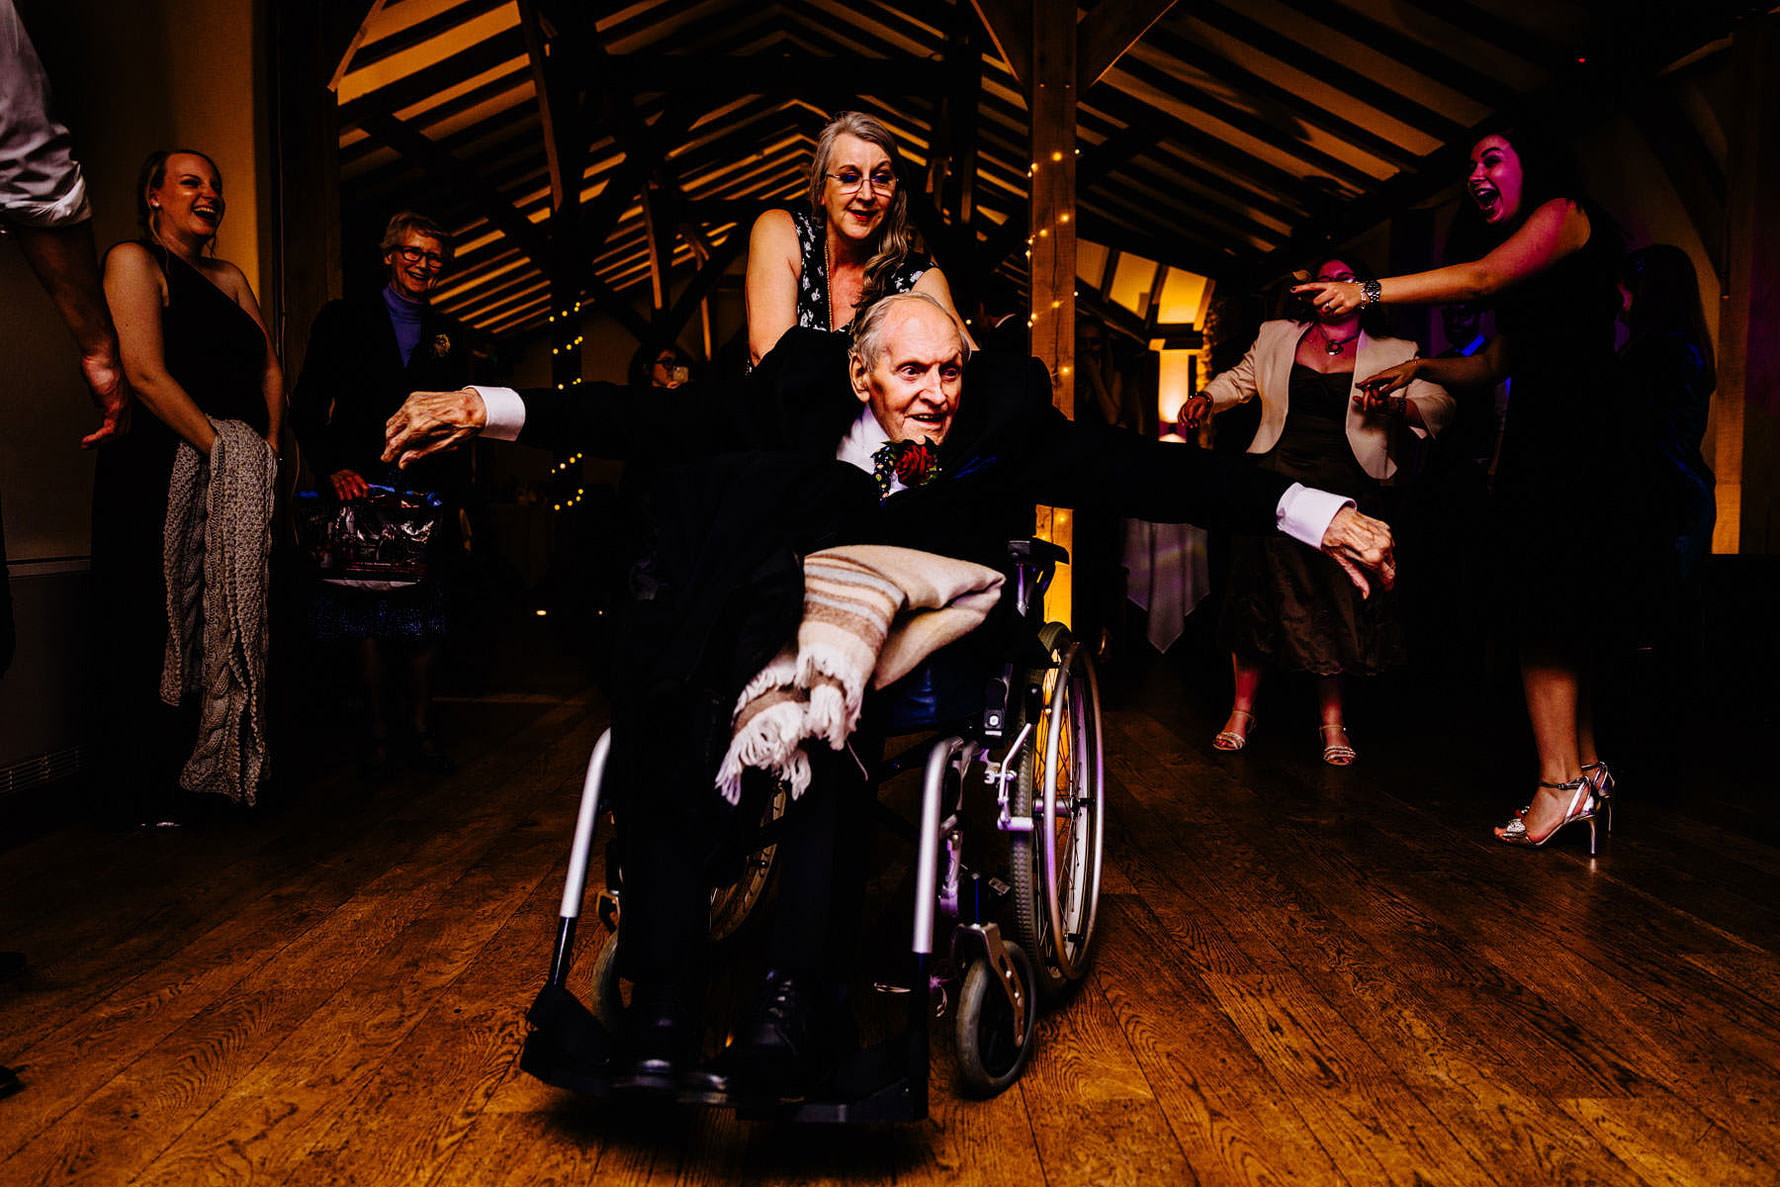 an elderly guest on the dancefloor